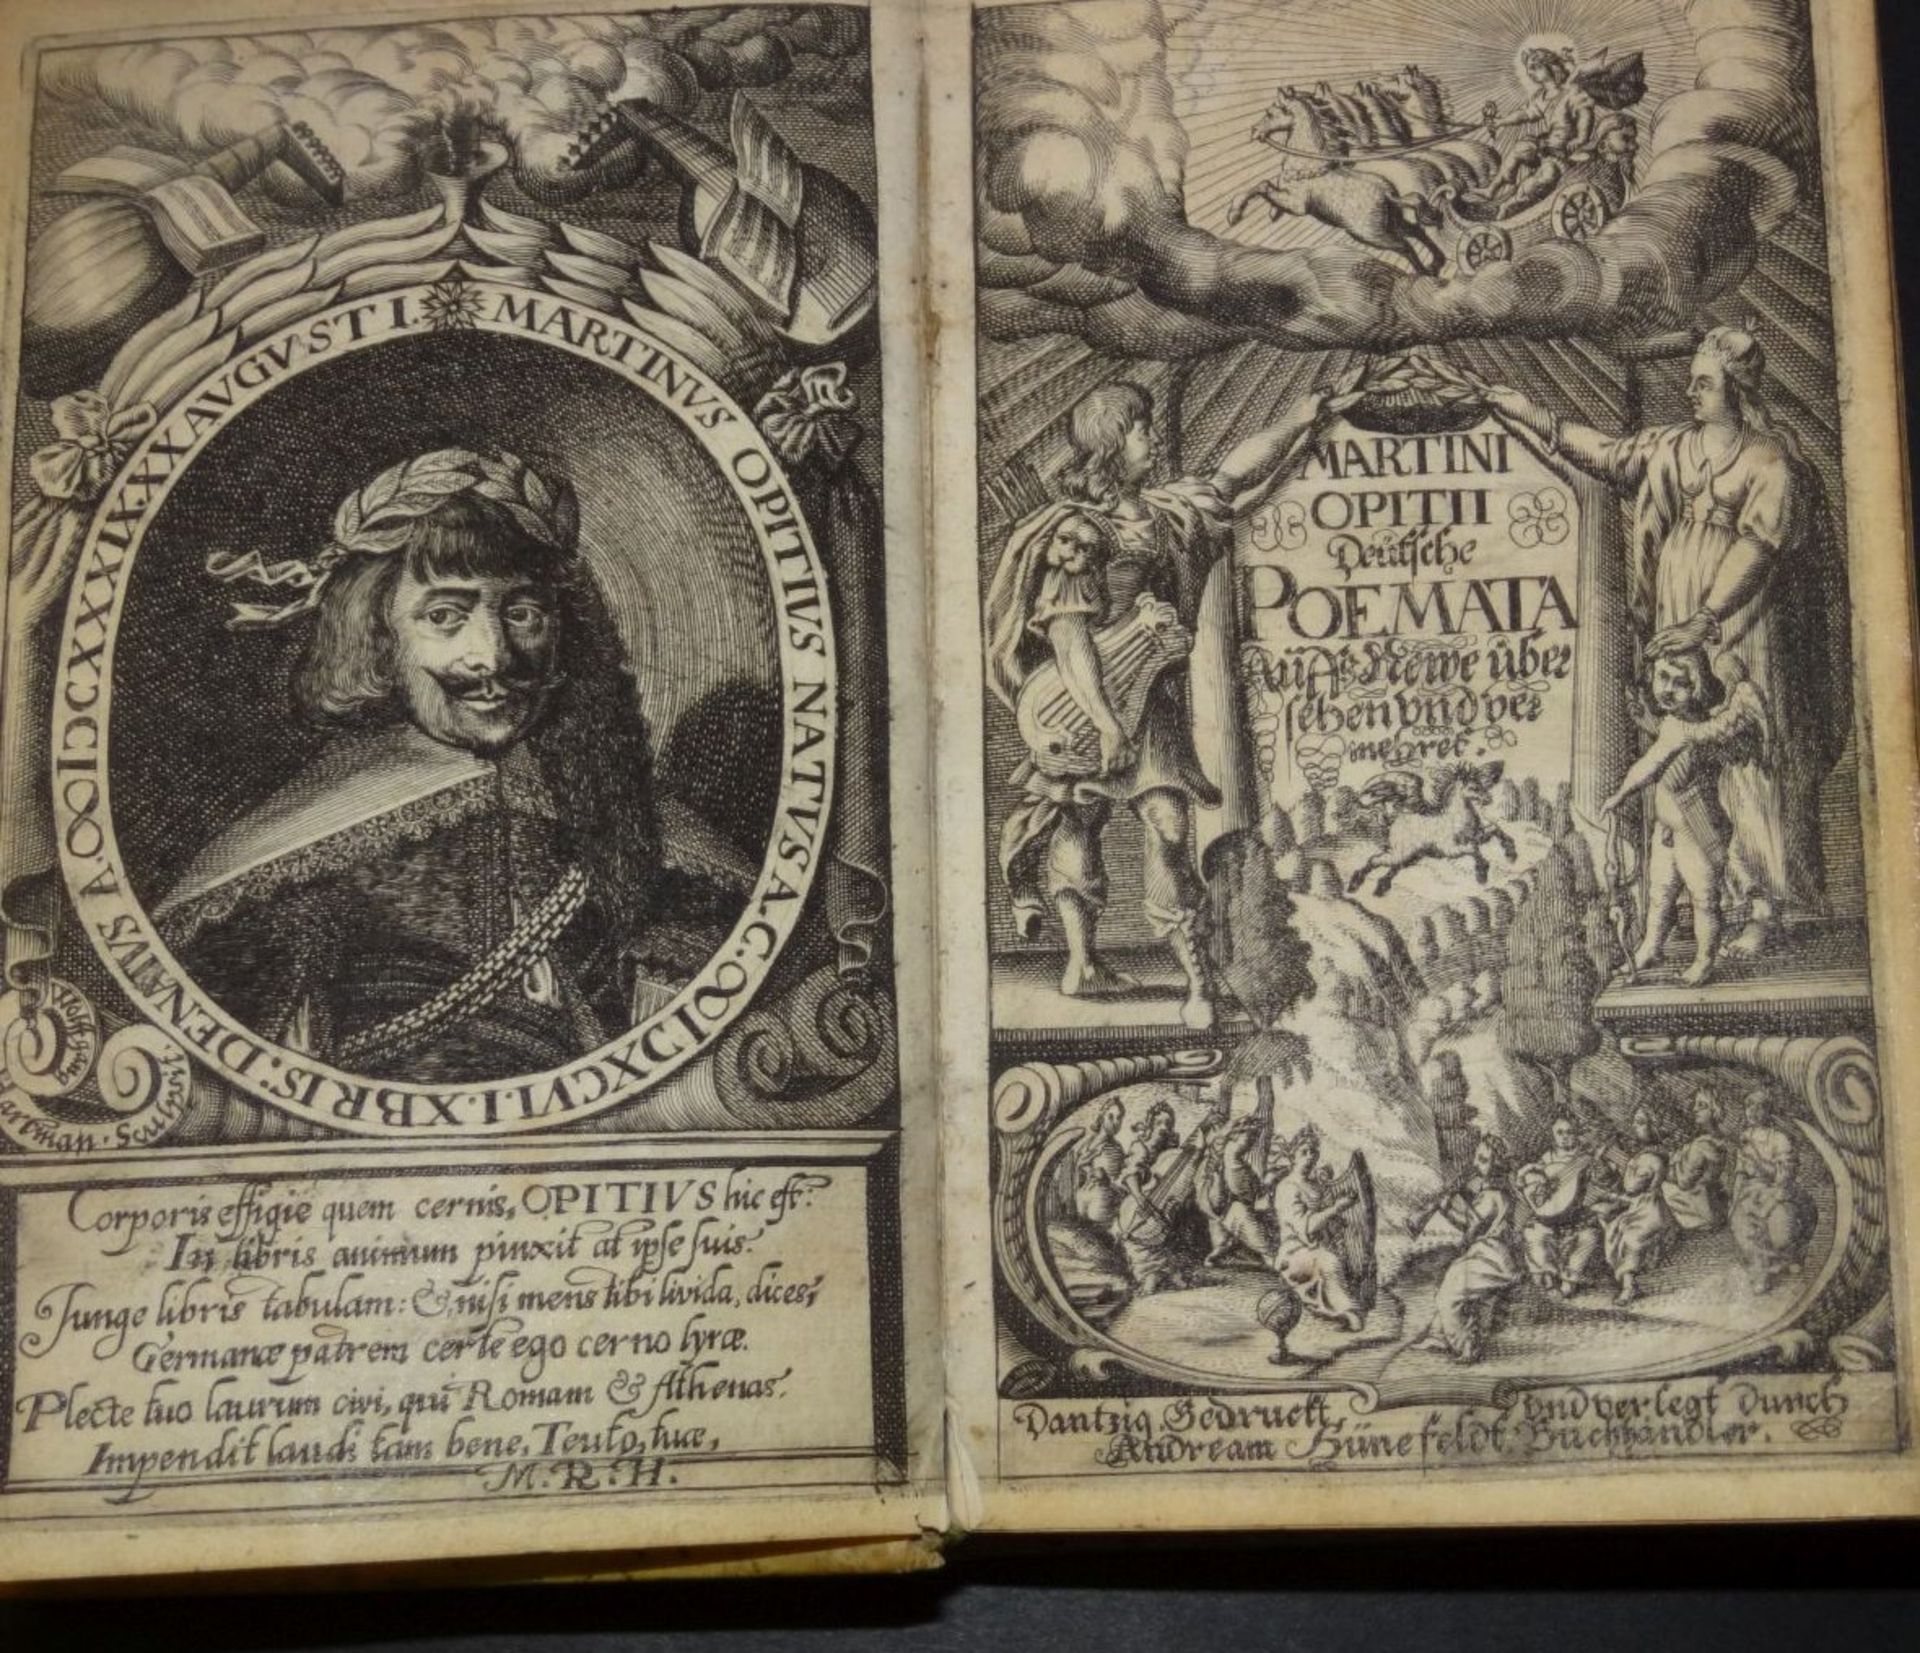 Martini Opitii "Weltliche Poemata" Dantzig , gedruckt und verleget bei Hünefeldt, 1641,